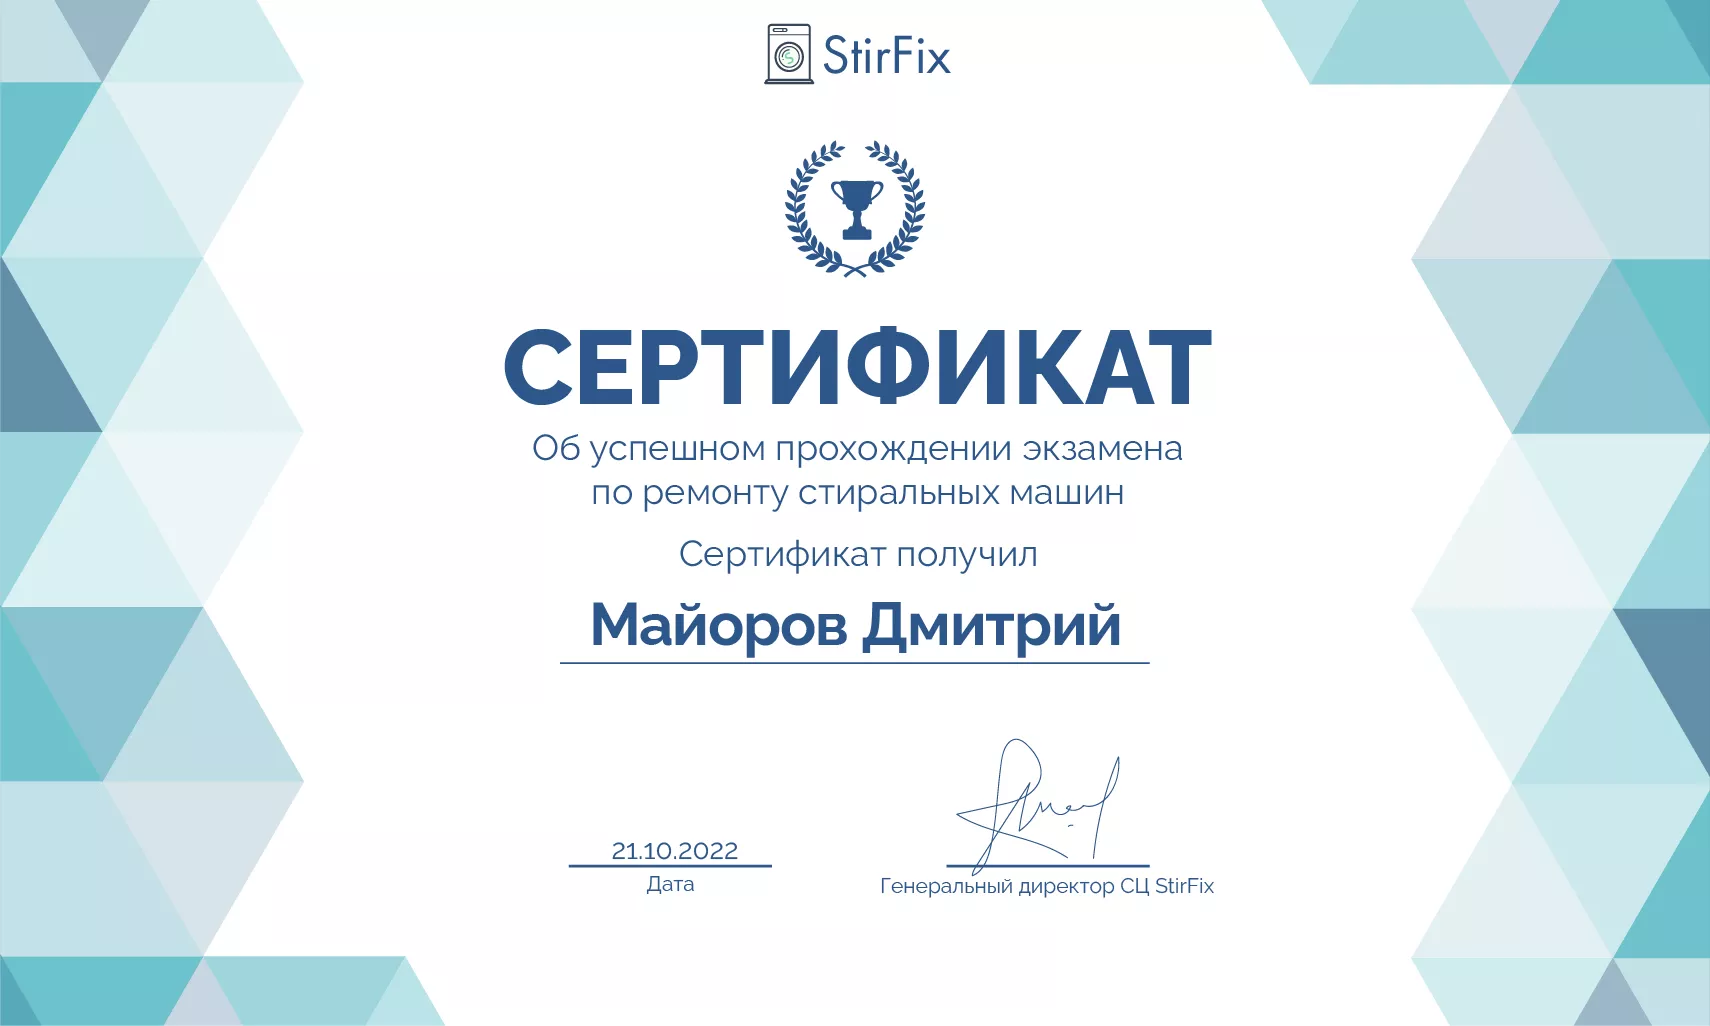 Майоров Дмитрий сертификат мастера по ремонту стиральных машин